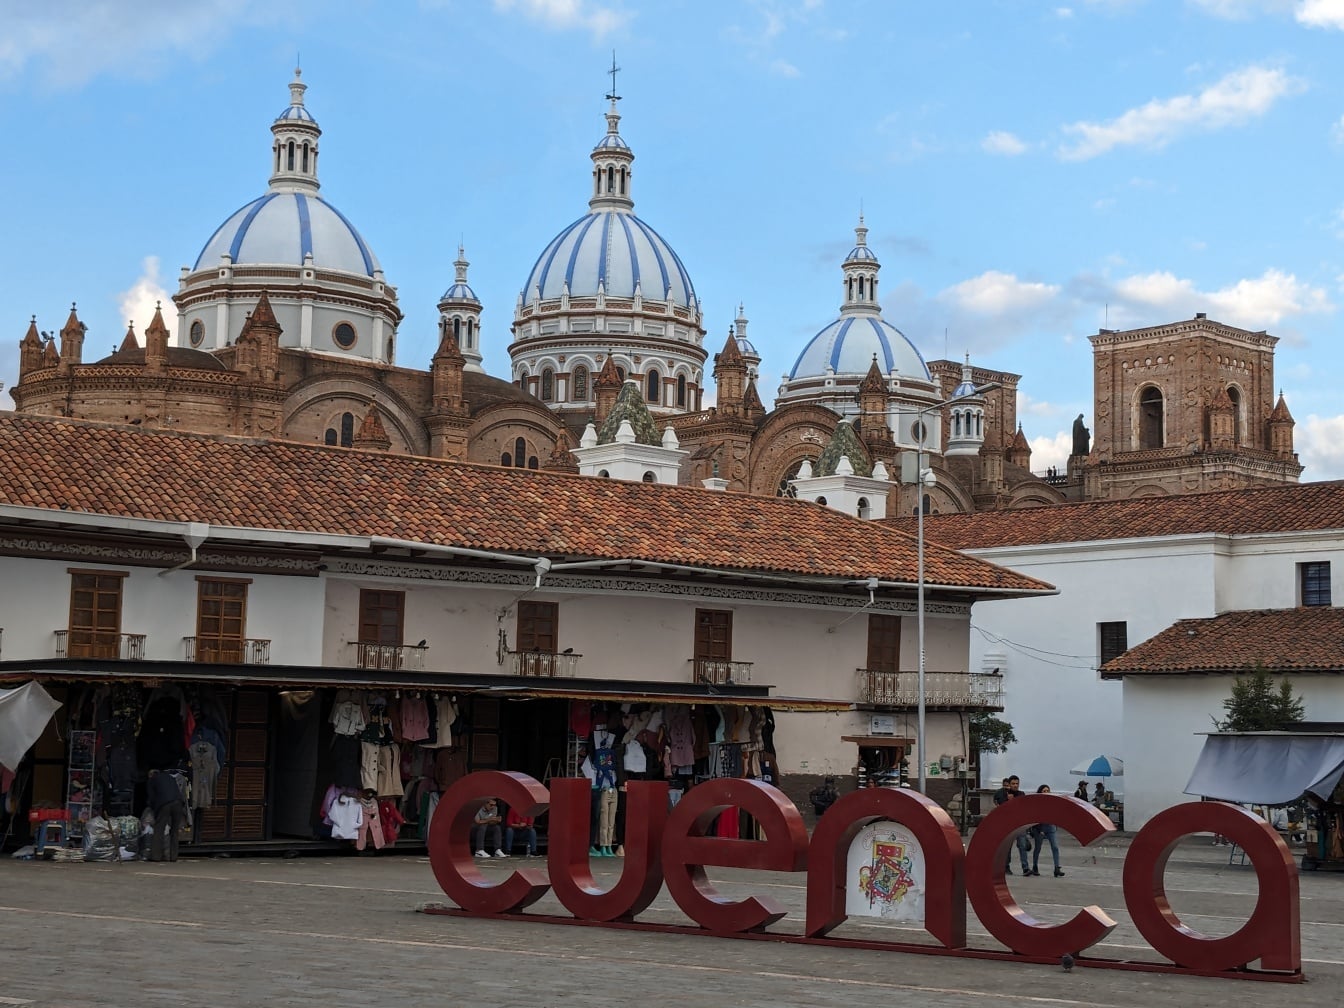 Ekvador’daki Cuenca şehir merkezindeki Plaza San Francisco, UNESCO Dünya mirası alanı